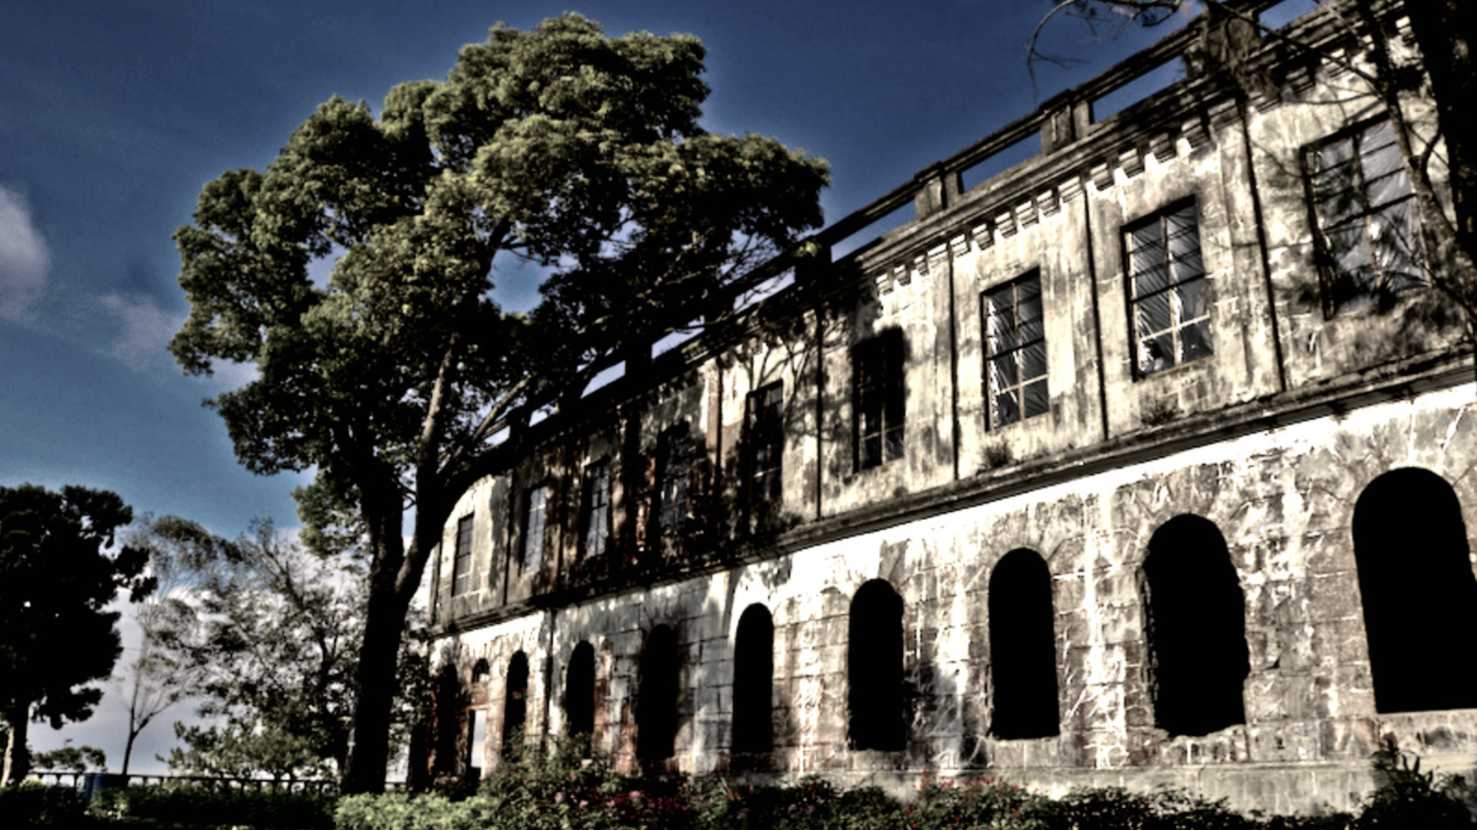 داستان لرزاندن استخوان در پشت هتل دیپلمات از شهر باگوئیو ، فیلیپین 1